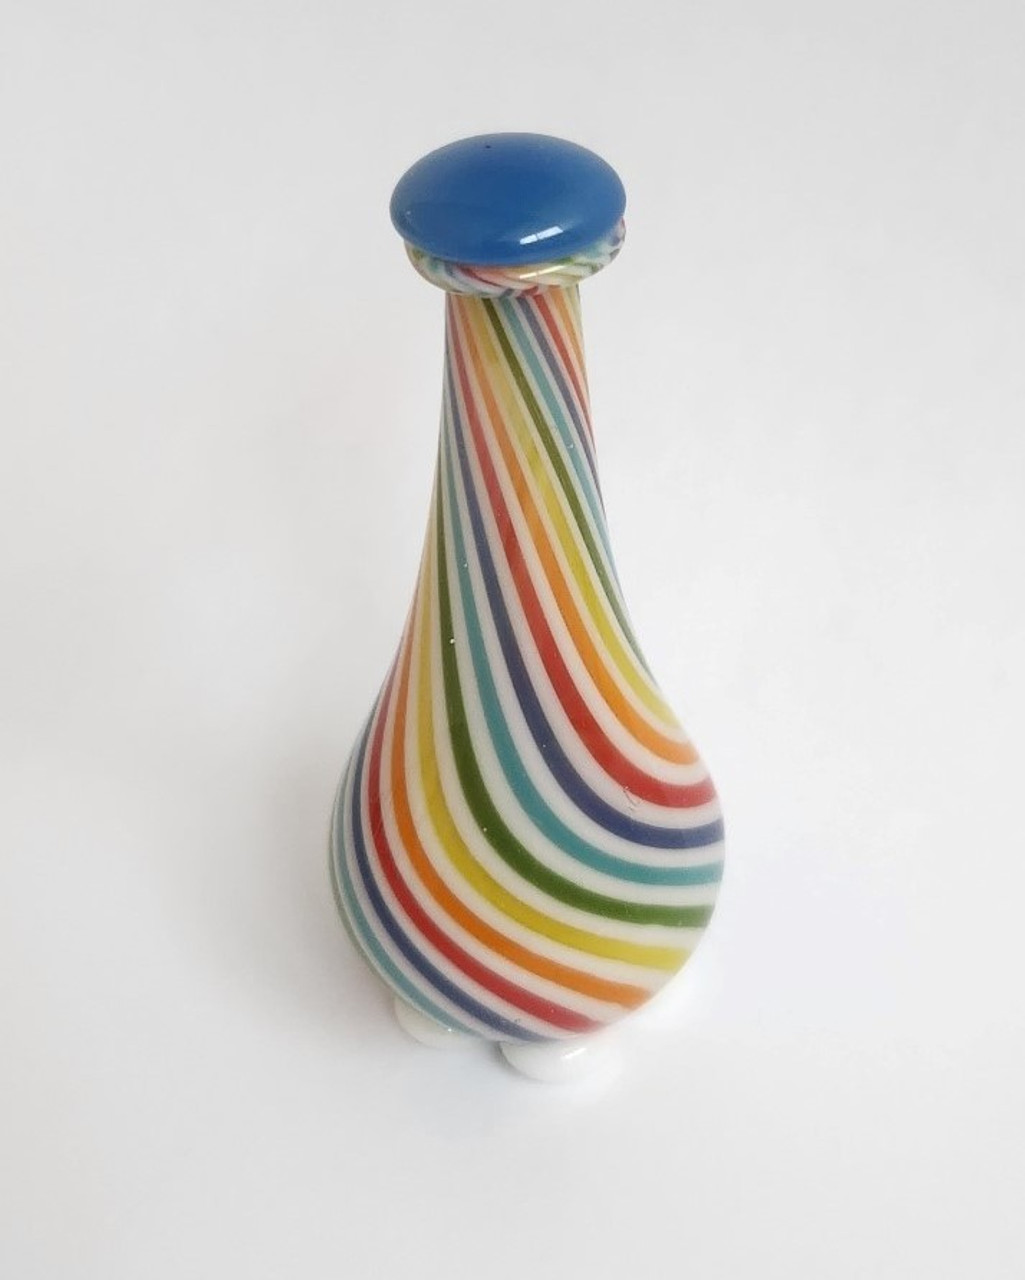 The Rainbow Tear Bottle